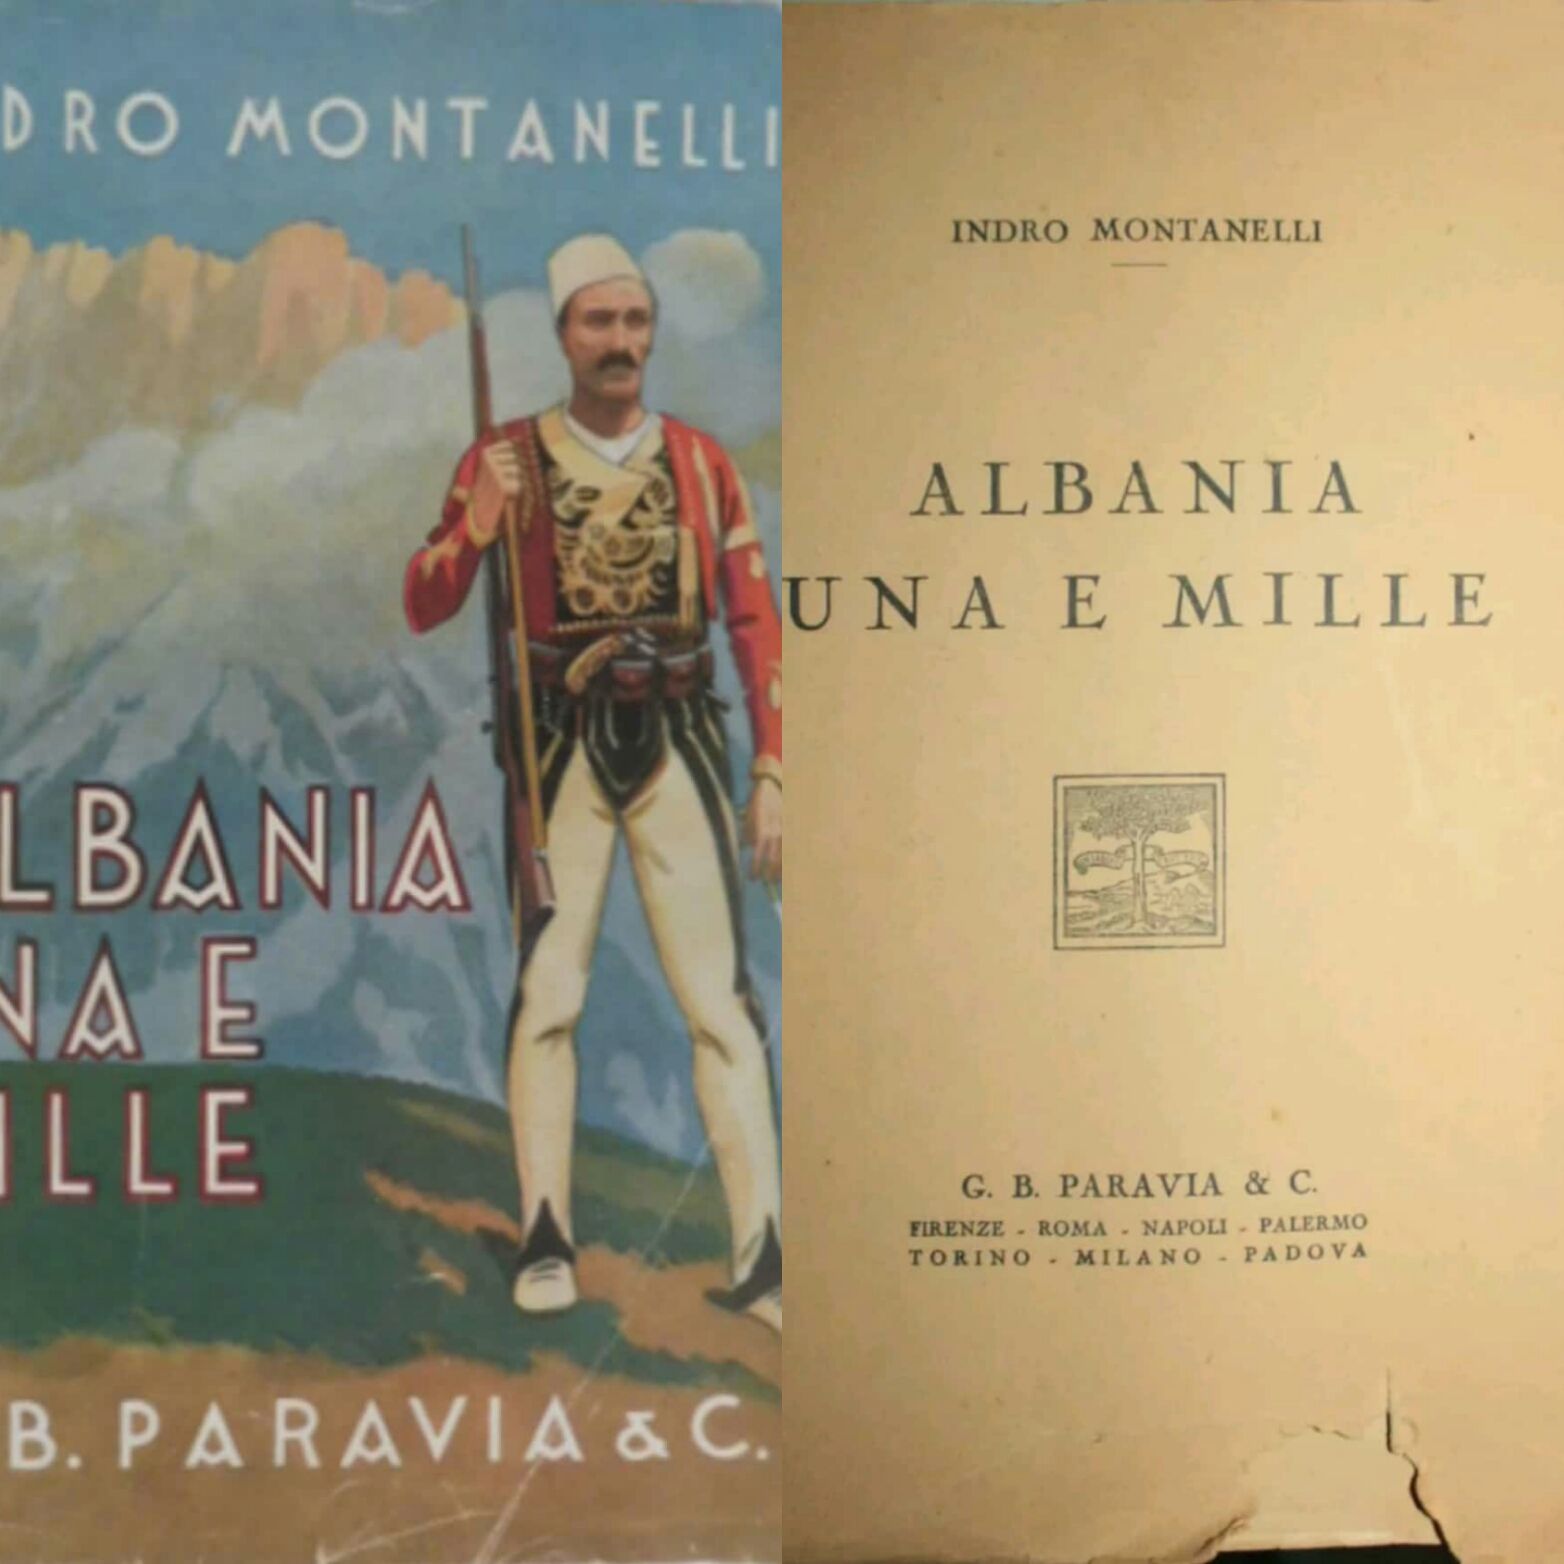 A caccia di un libro ormai iper-valutato: “Albania una e mille” di Indro Montanelli (1939)